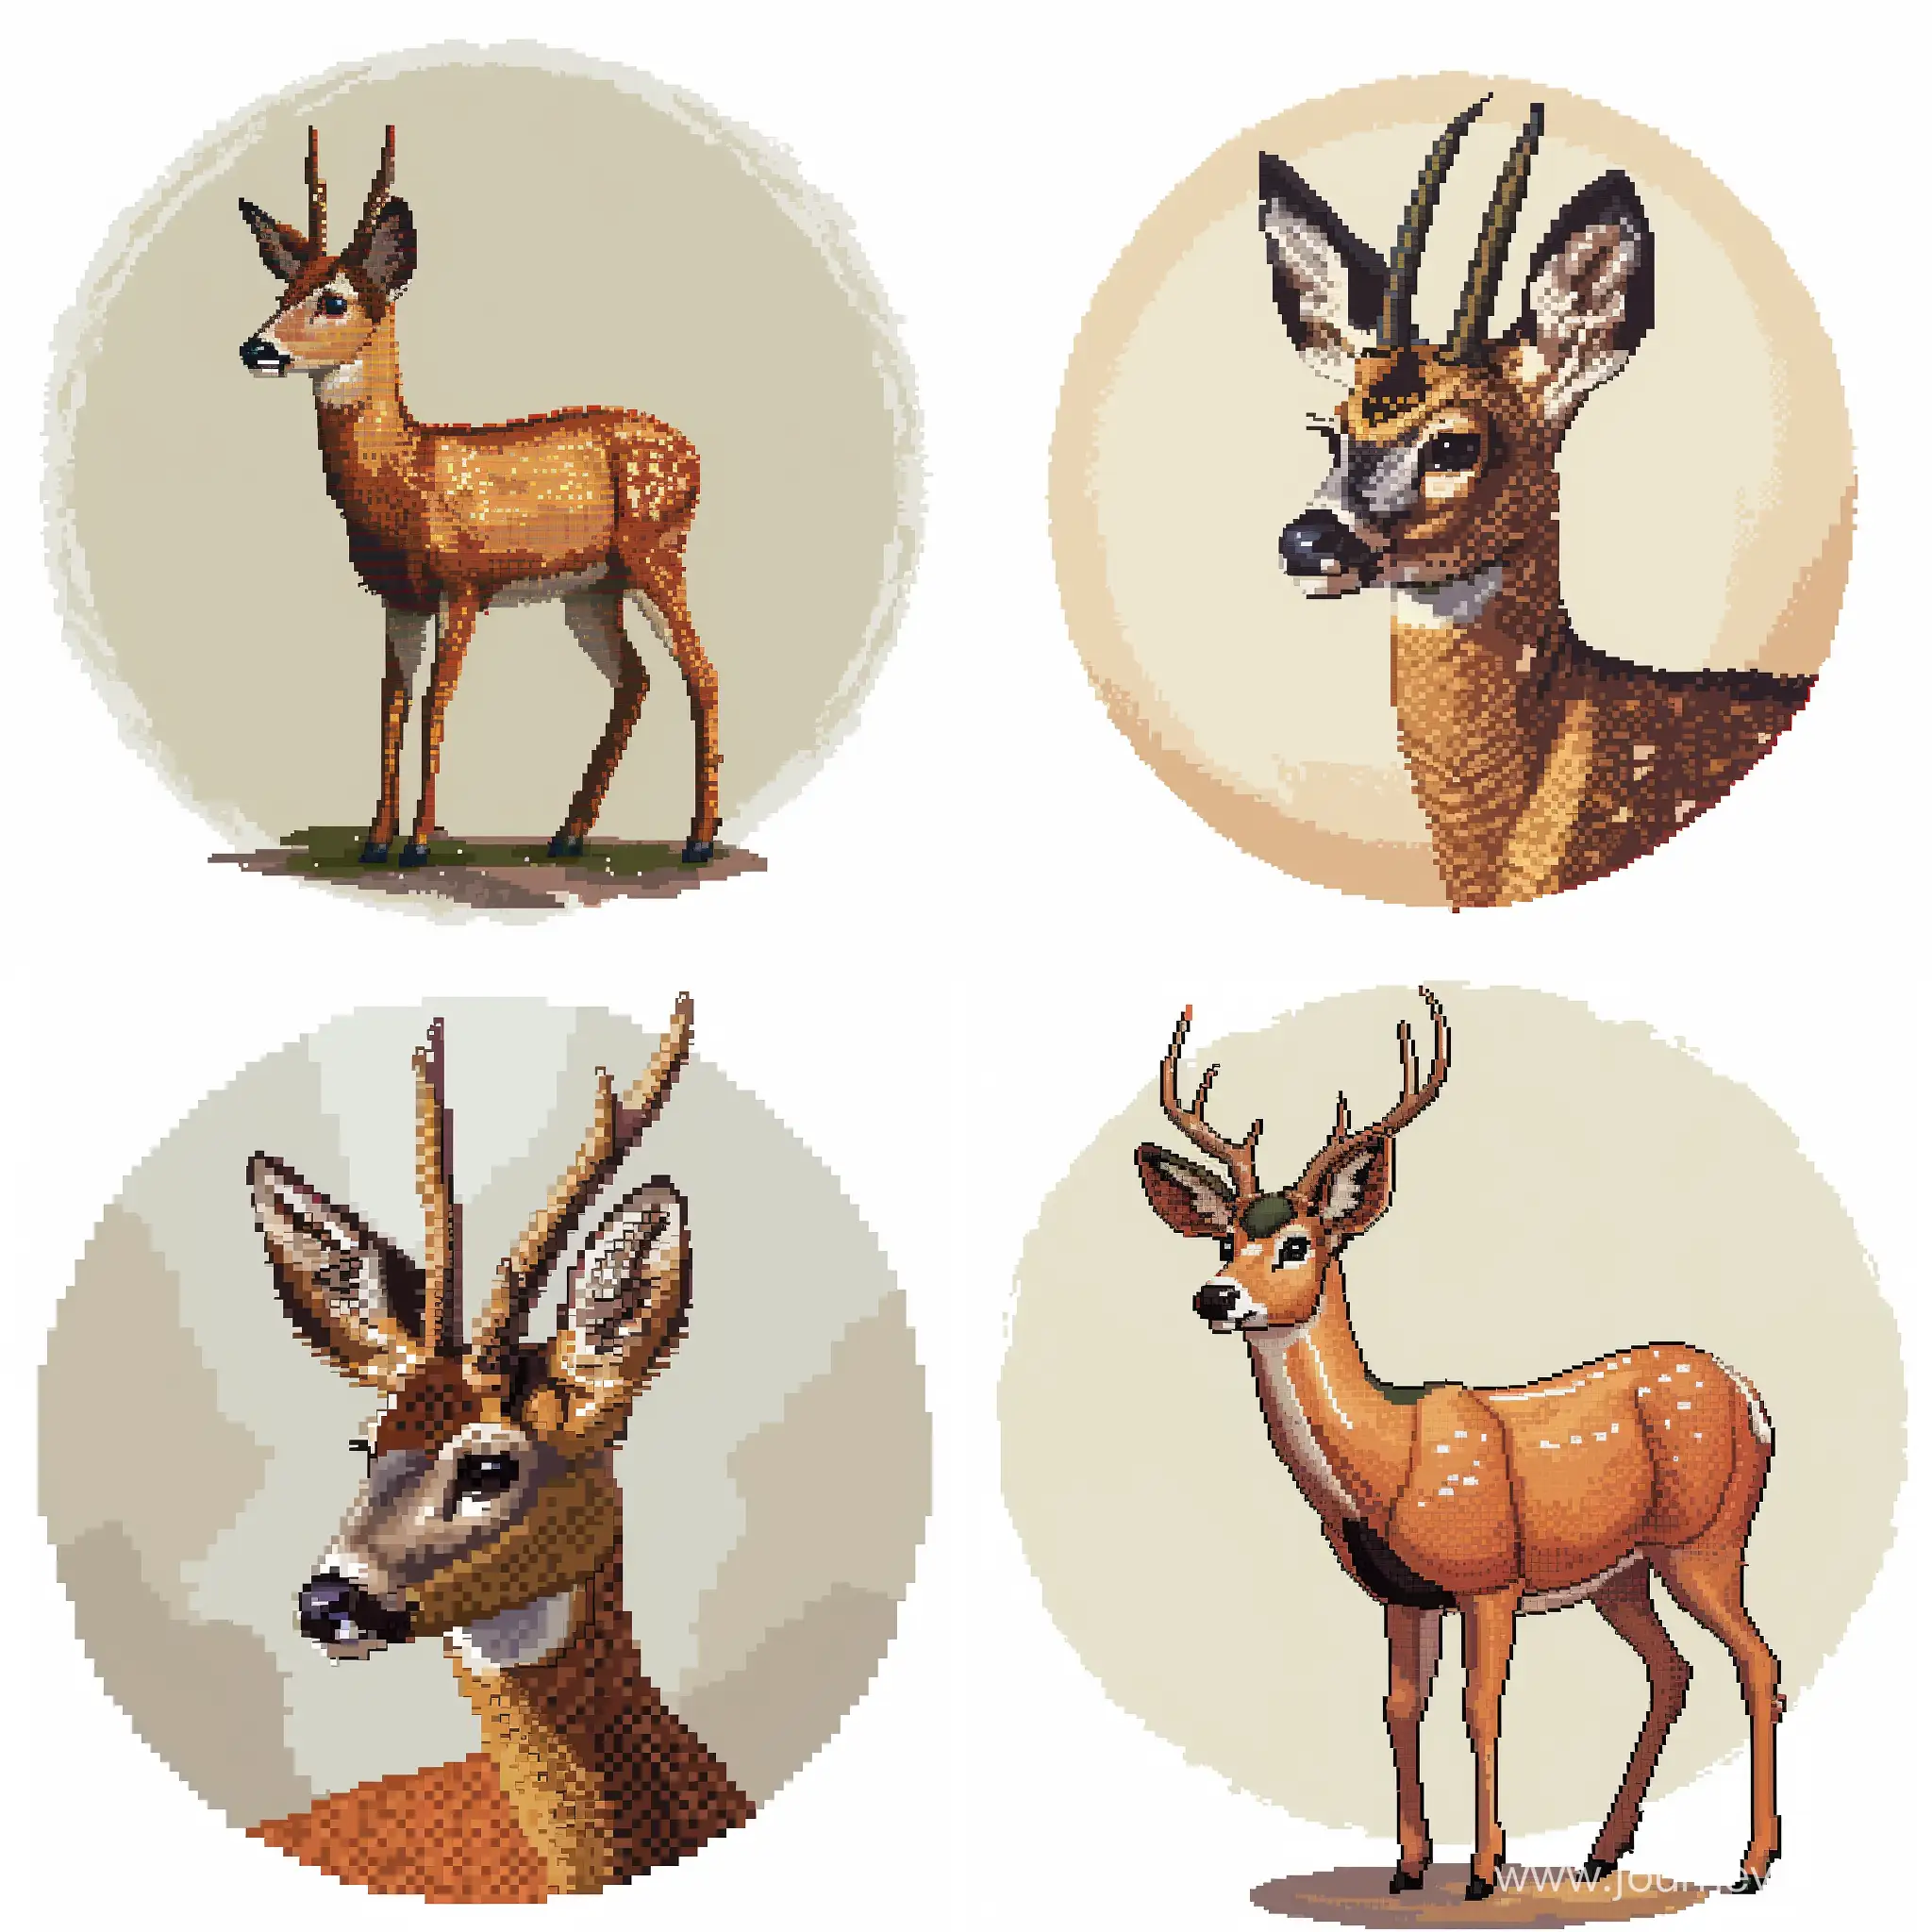 一张狍鹿的像素画，我希望作为头像使用，其中鹿的部分为像素画风，周围被纯色背景包裹在一个圆圈内